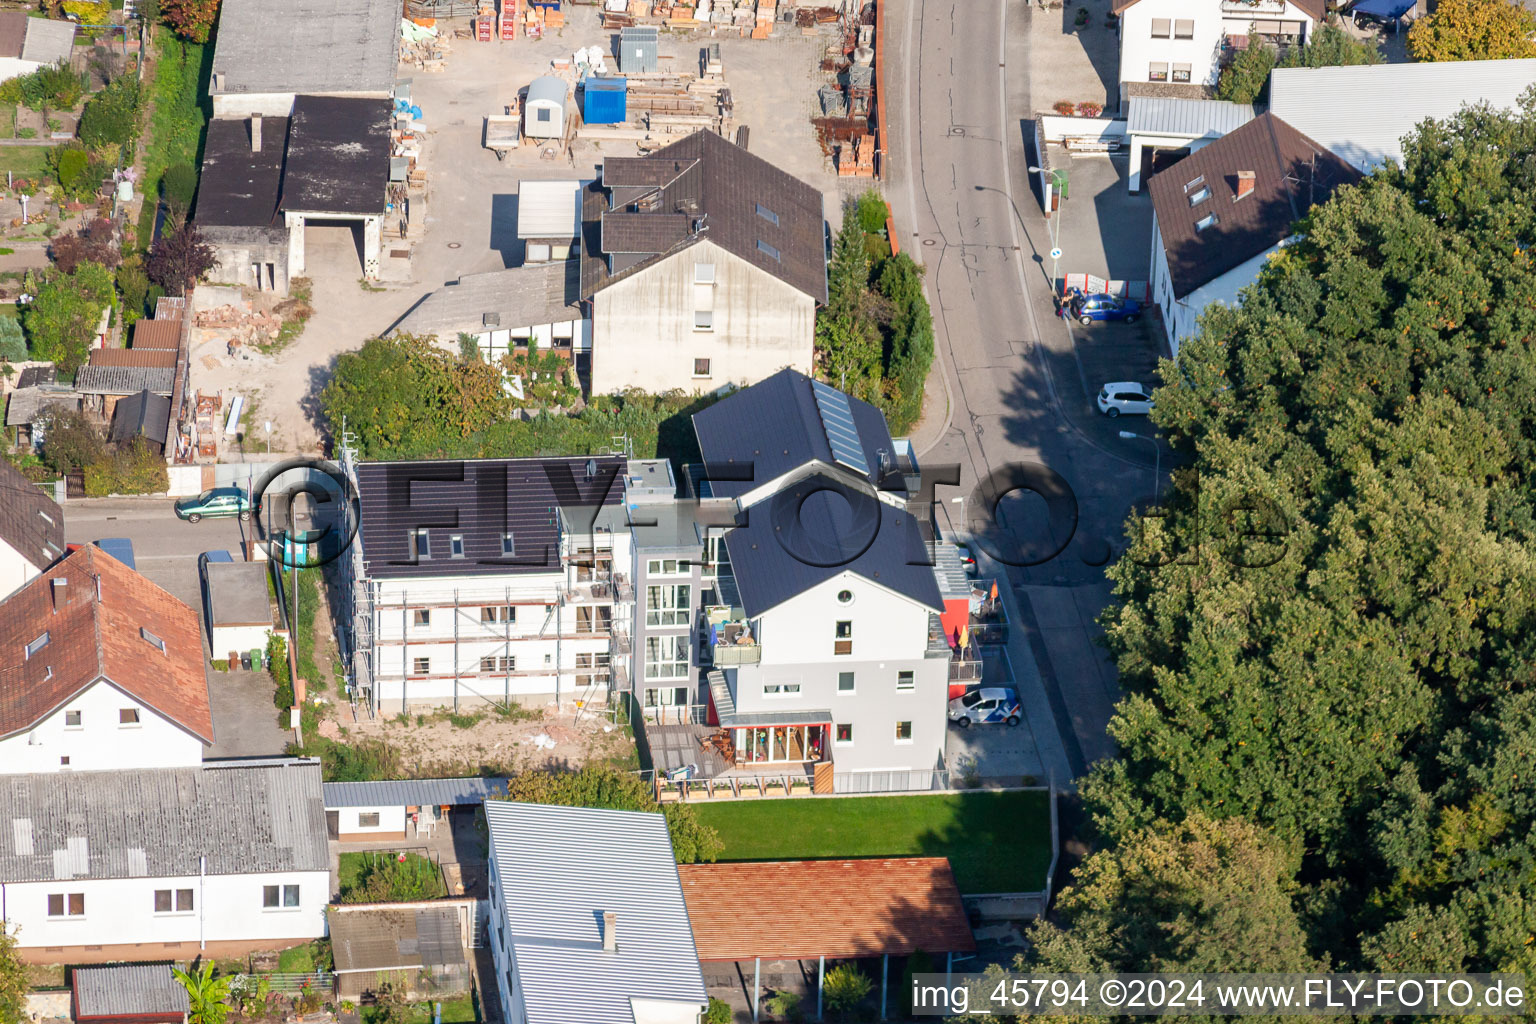 Règlement de Garden City à Kandel dans le département Rhénanie-Palatinat, Allemagne depuis l'avion